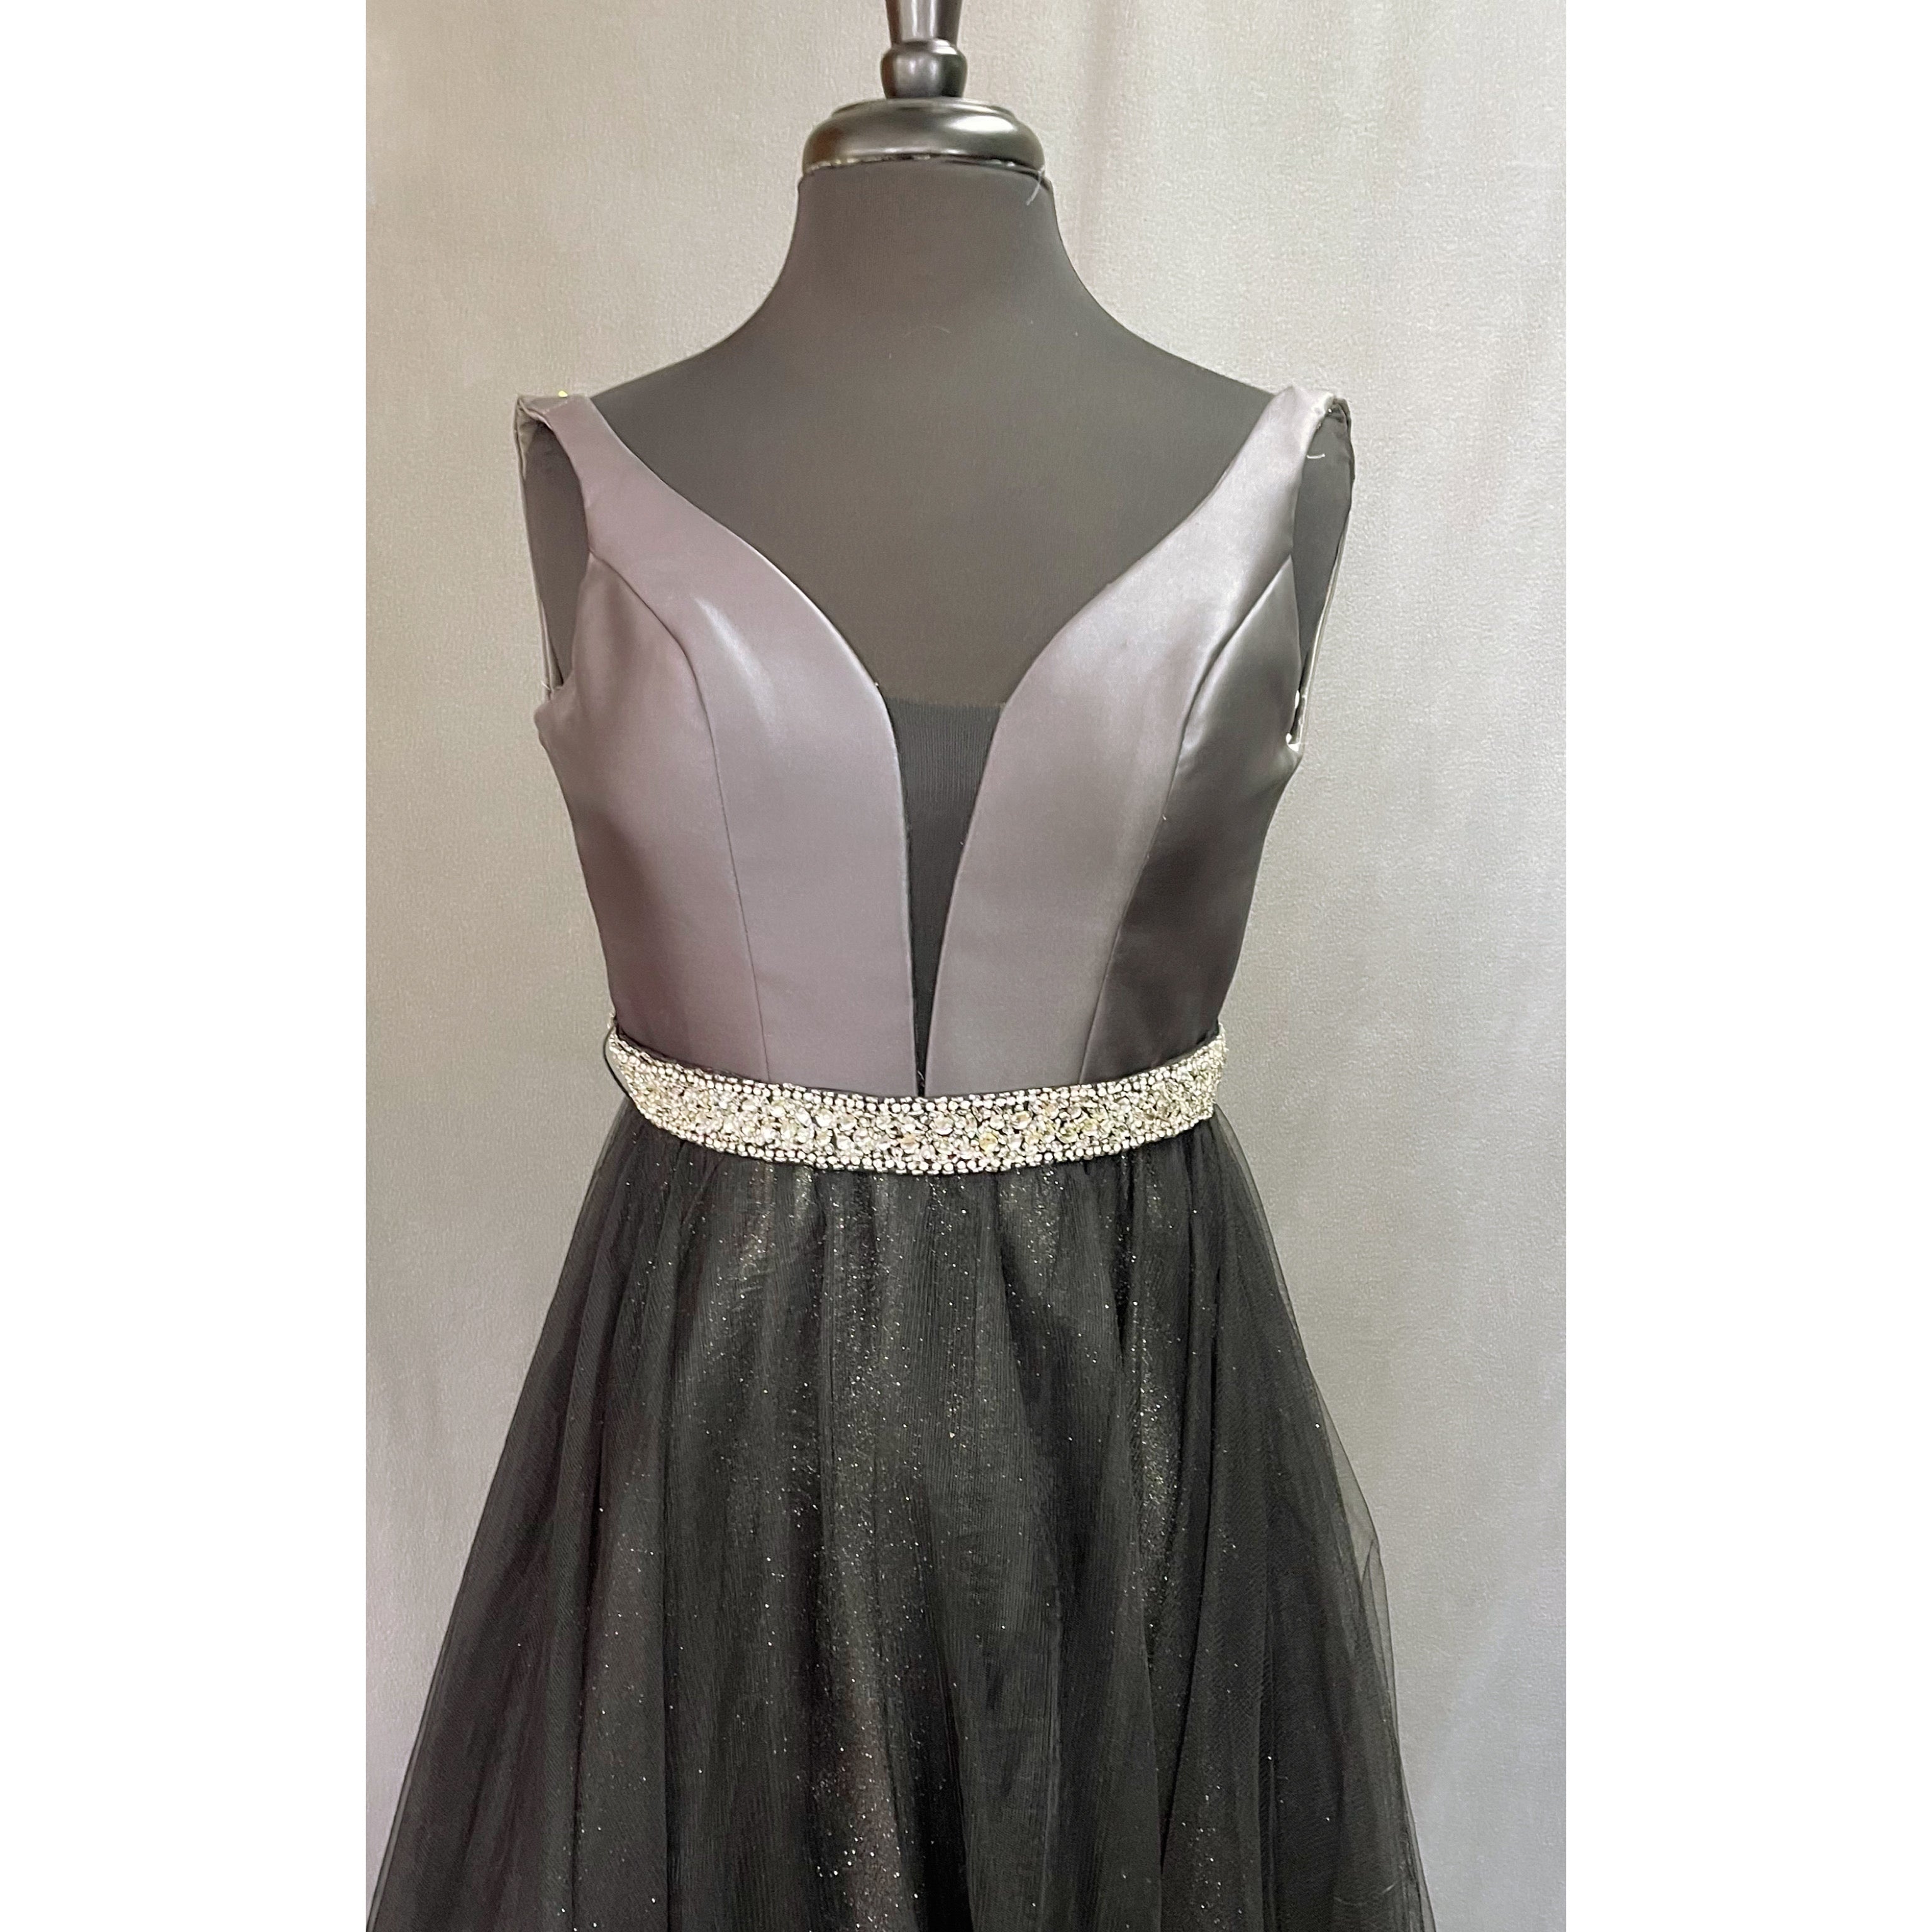 Alyce black dress, size 0